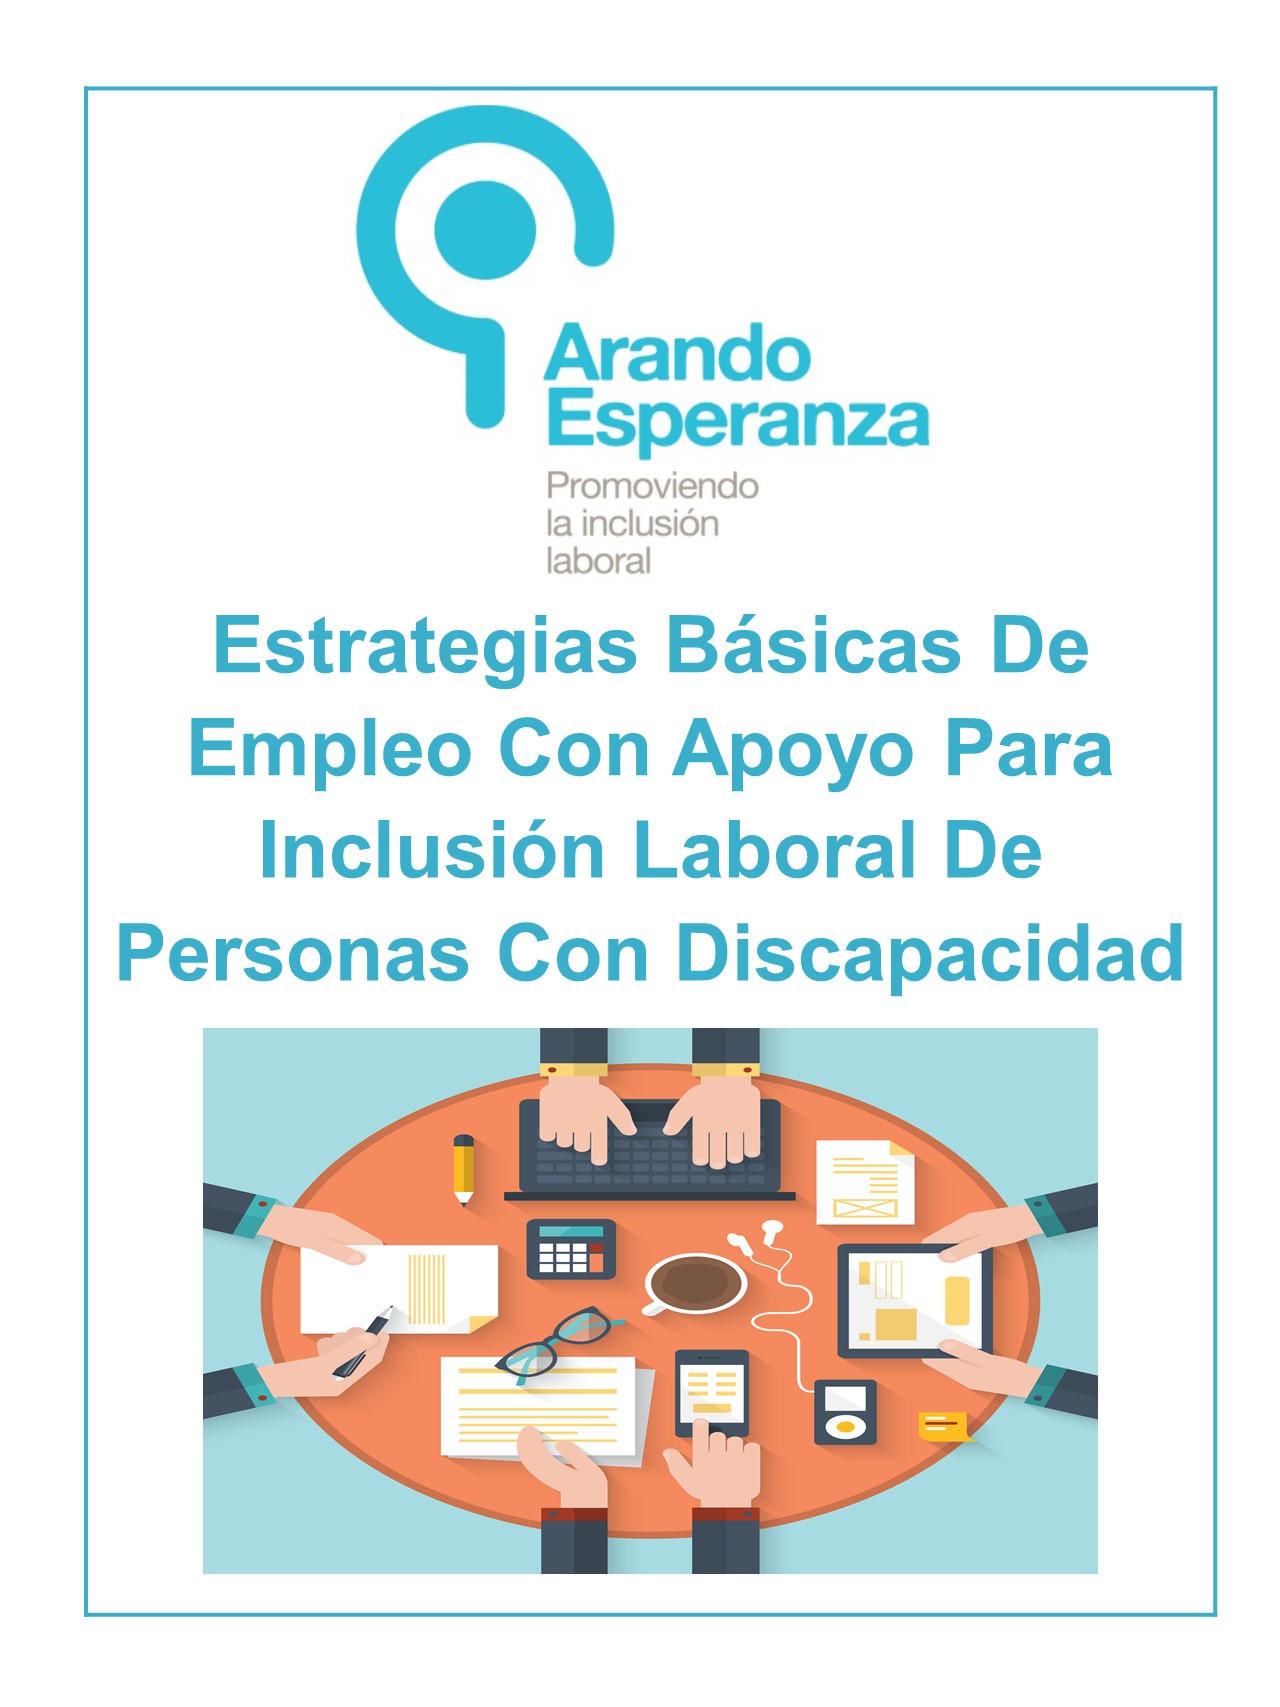 Estrategias Básicas De Empleo Con Apoyo Para Inclusión Laboral De Personas Con Discapacidad